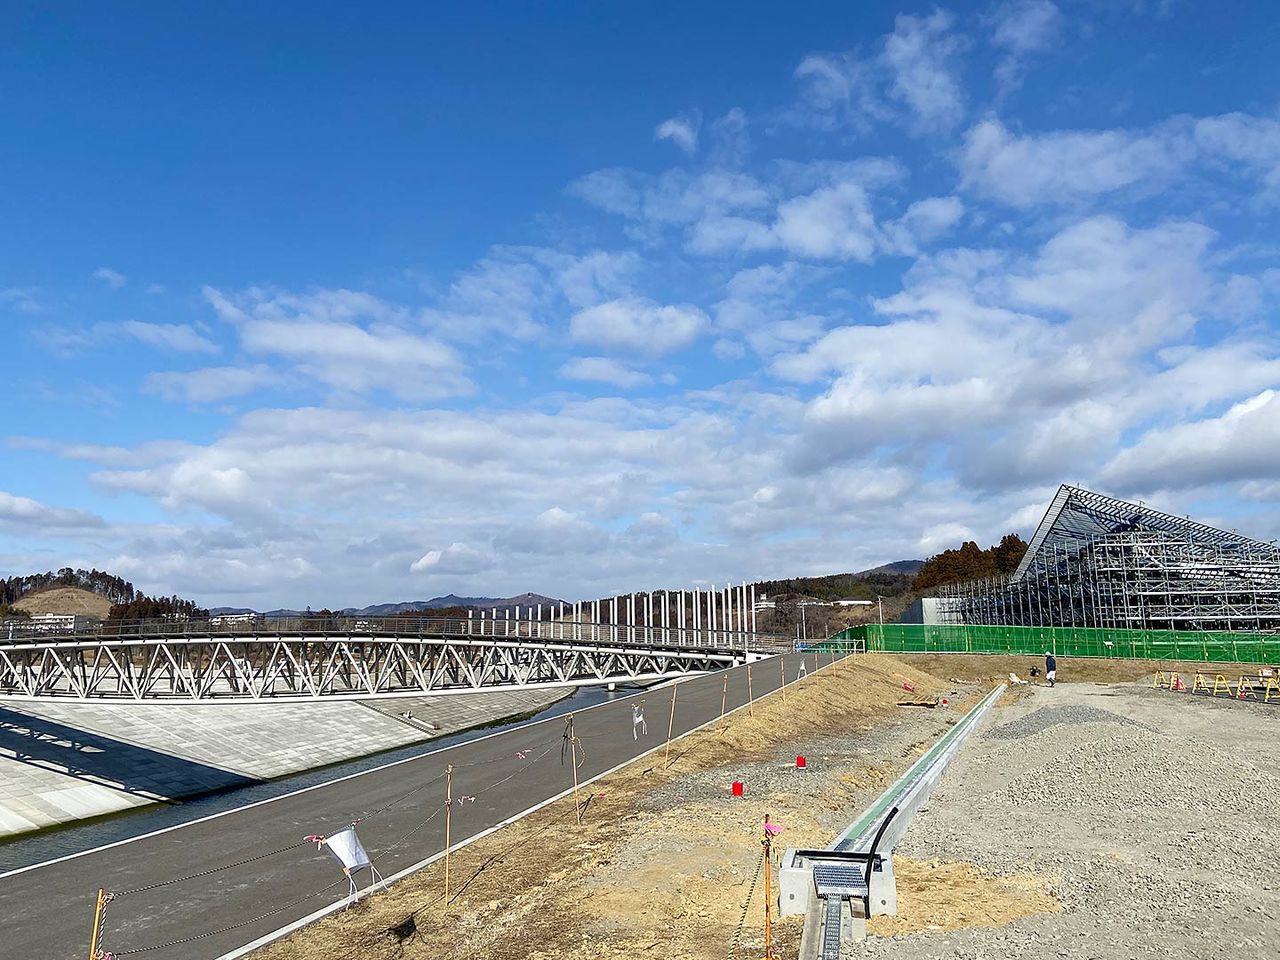 Tras el desastre, la altitud de la ciudad se elevó unos diez metros y se reconstruyó el puente sobre el río Hachiman. Al fondo a la derecha se observan las obras del monumento conmemorativo 311 Minamisanriku, diseñado por el arquitecto Kuma Kengo.